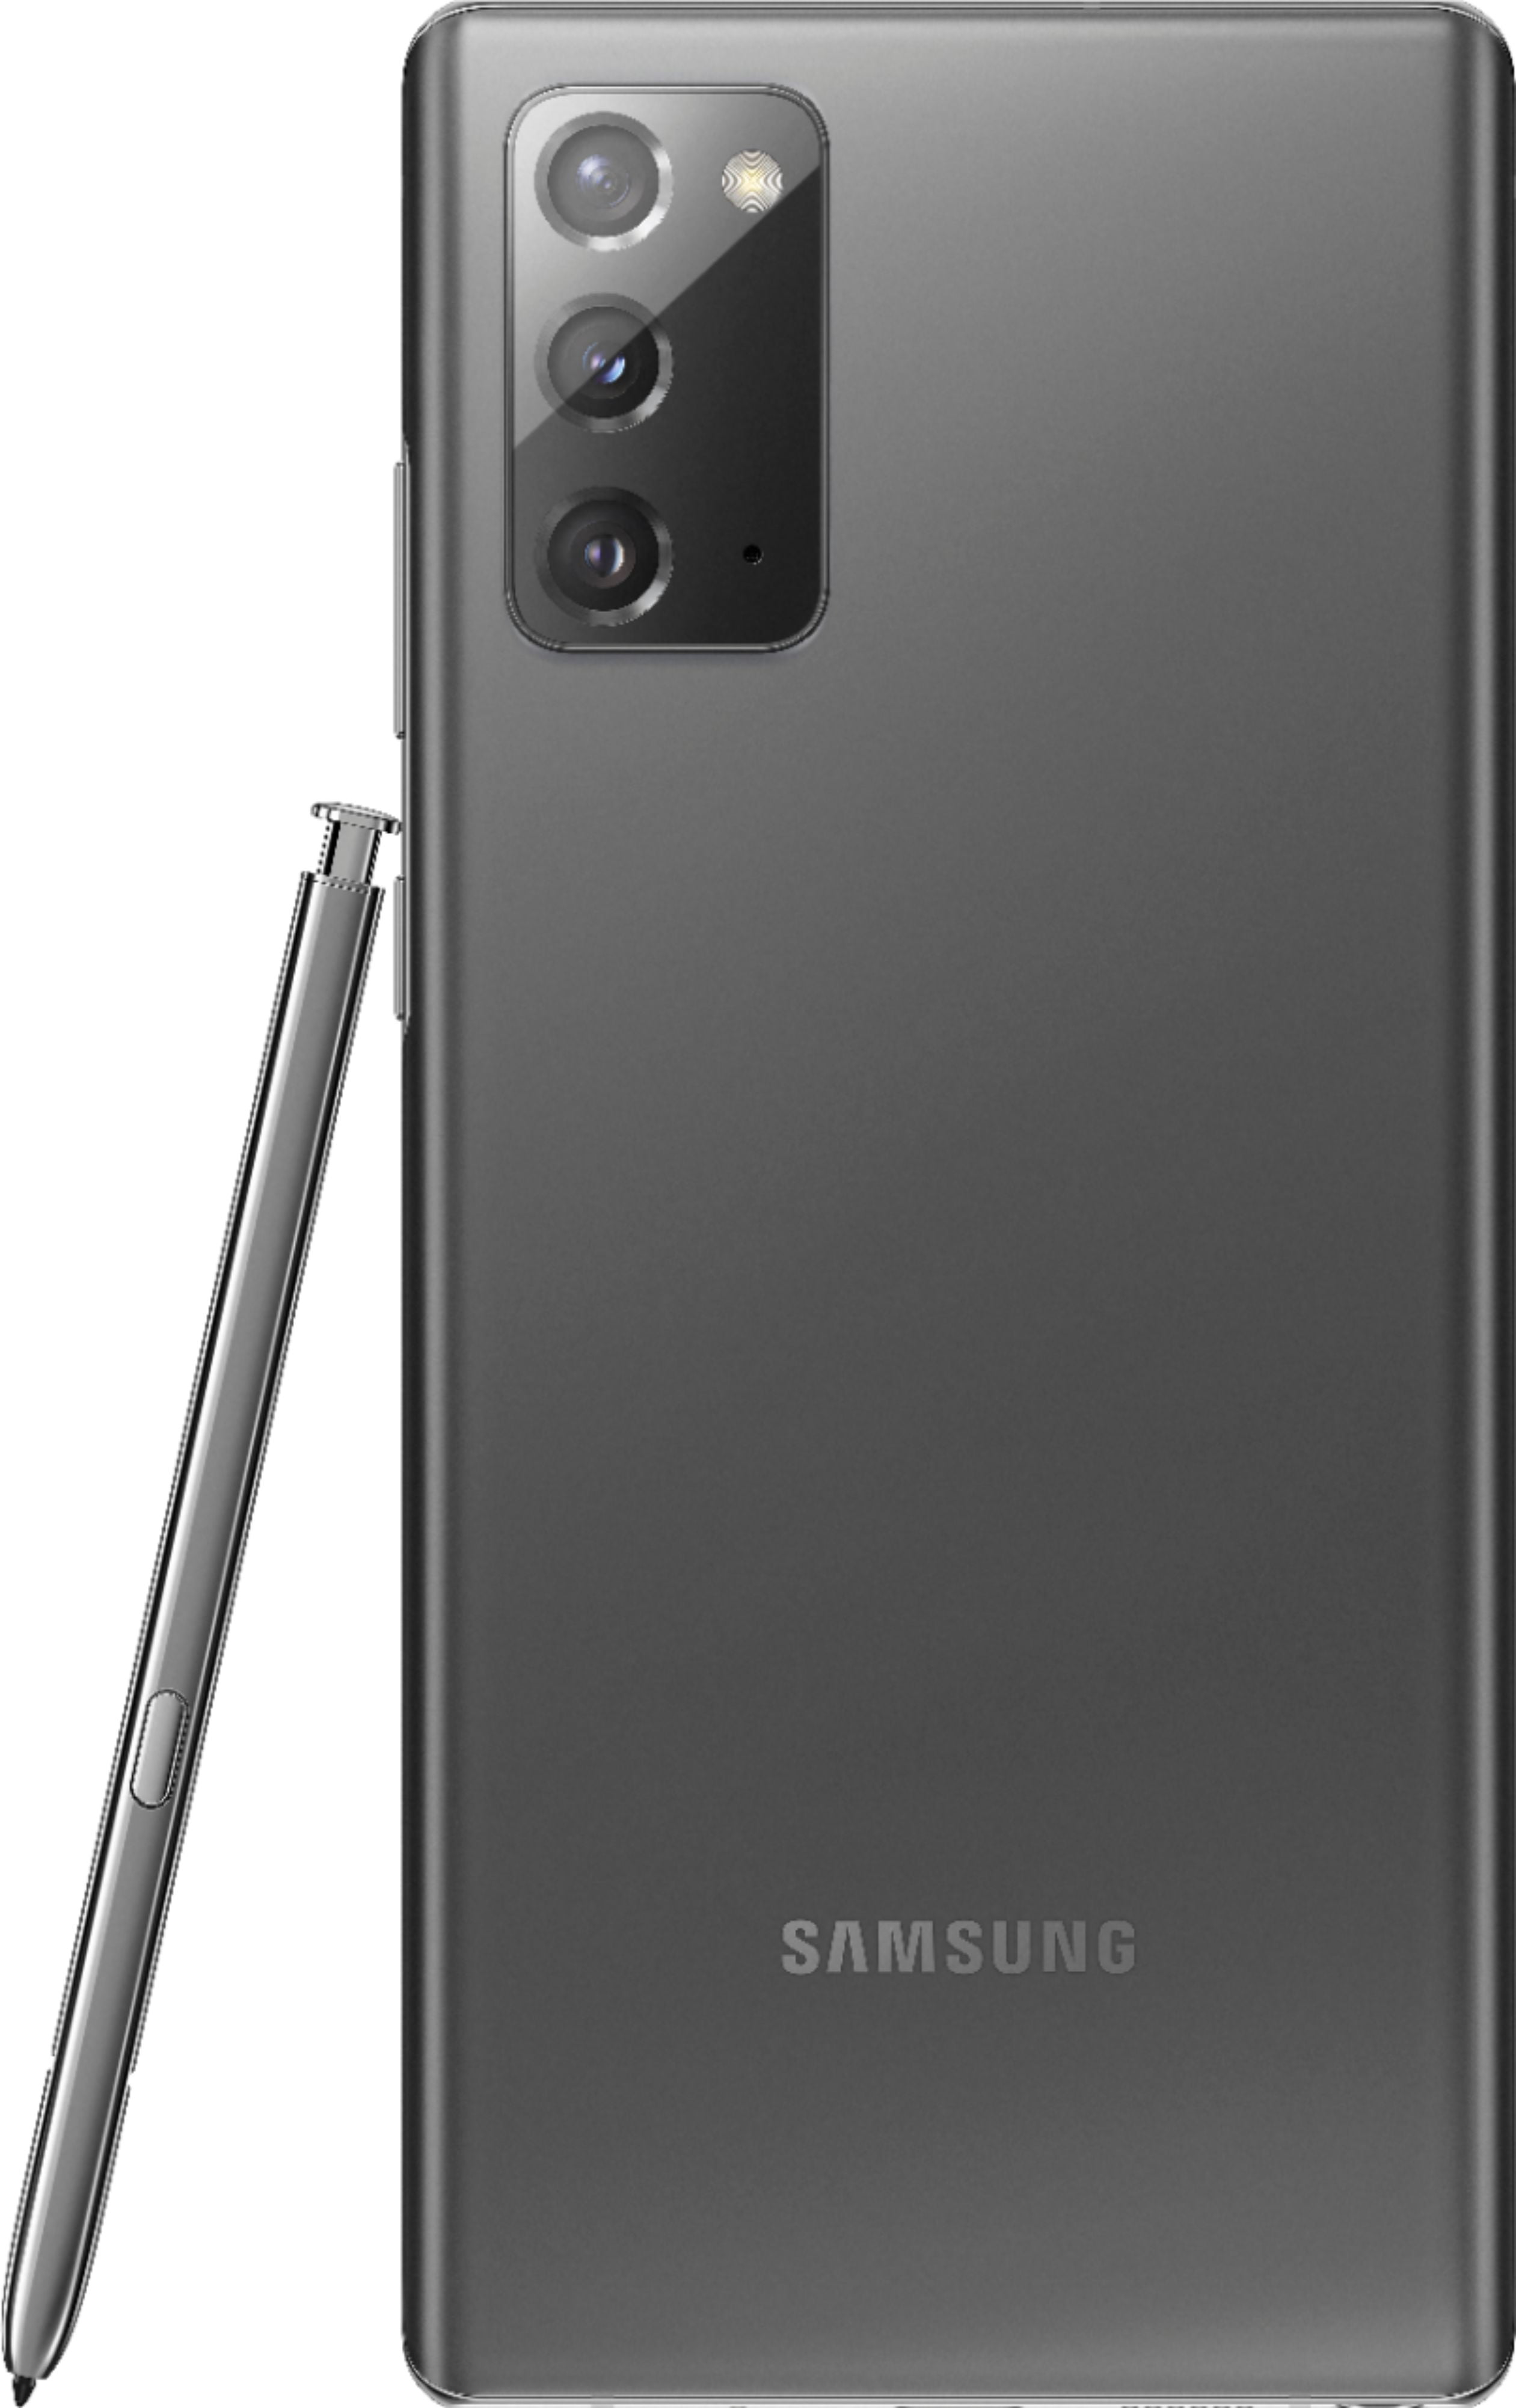 Samsung Galaxy Note 9 128GB Ocean Blue (Unlocked) Used Grade B 